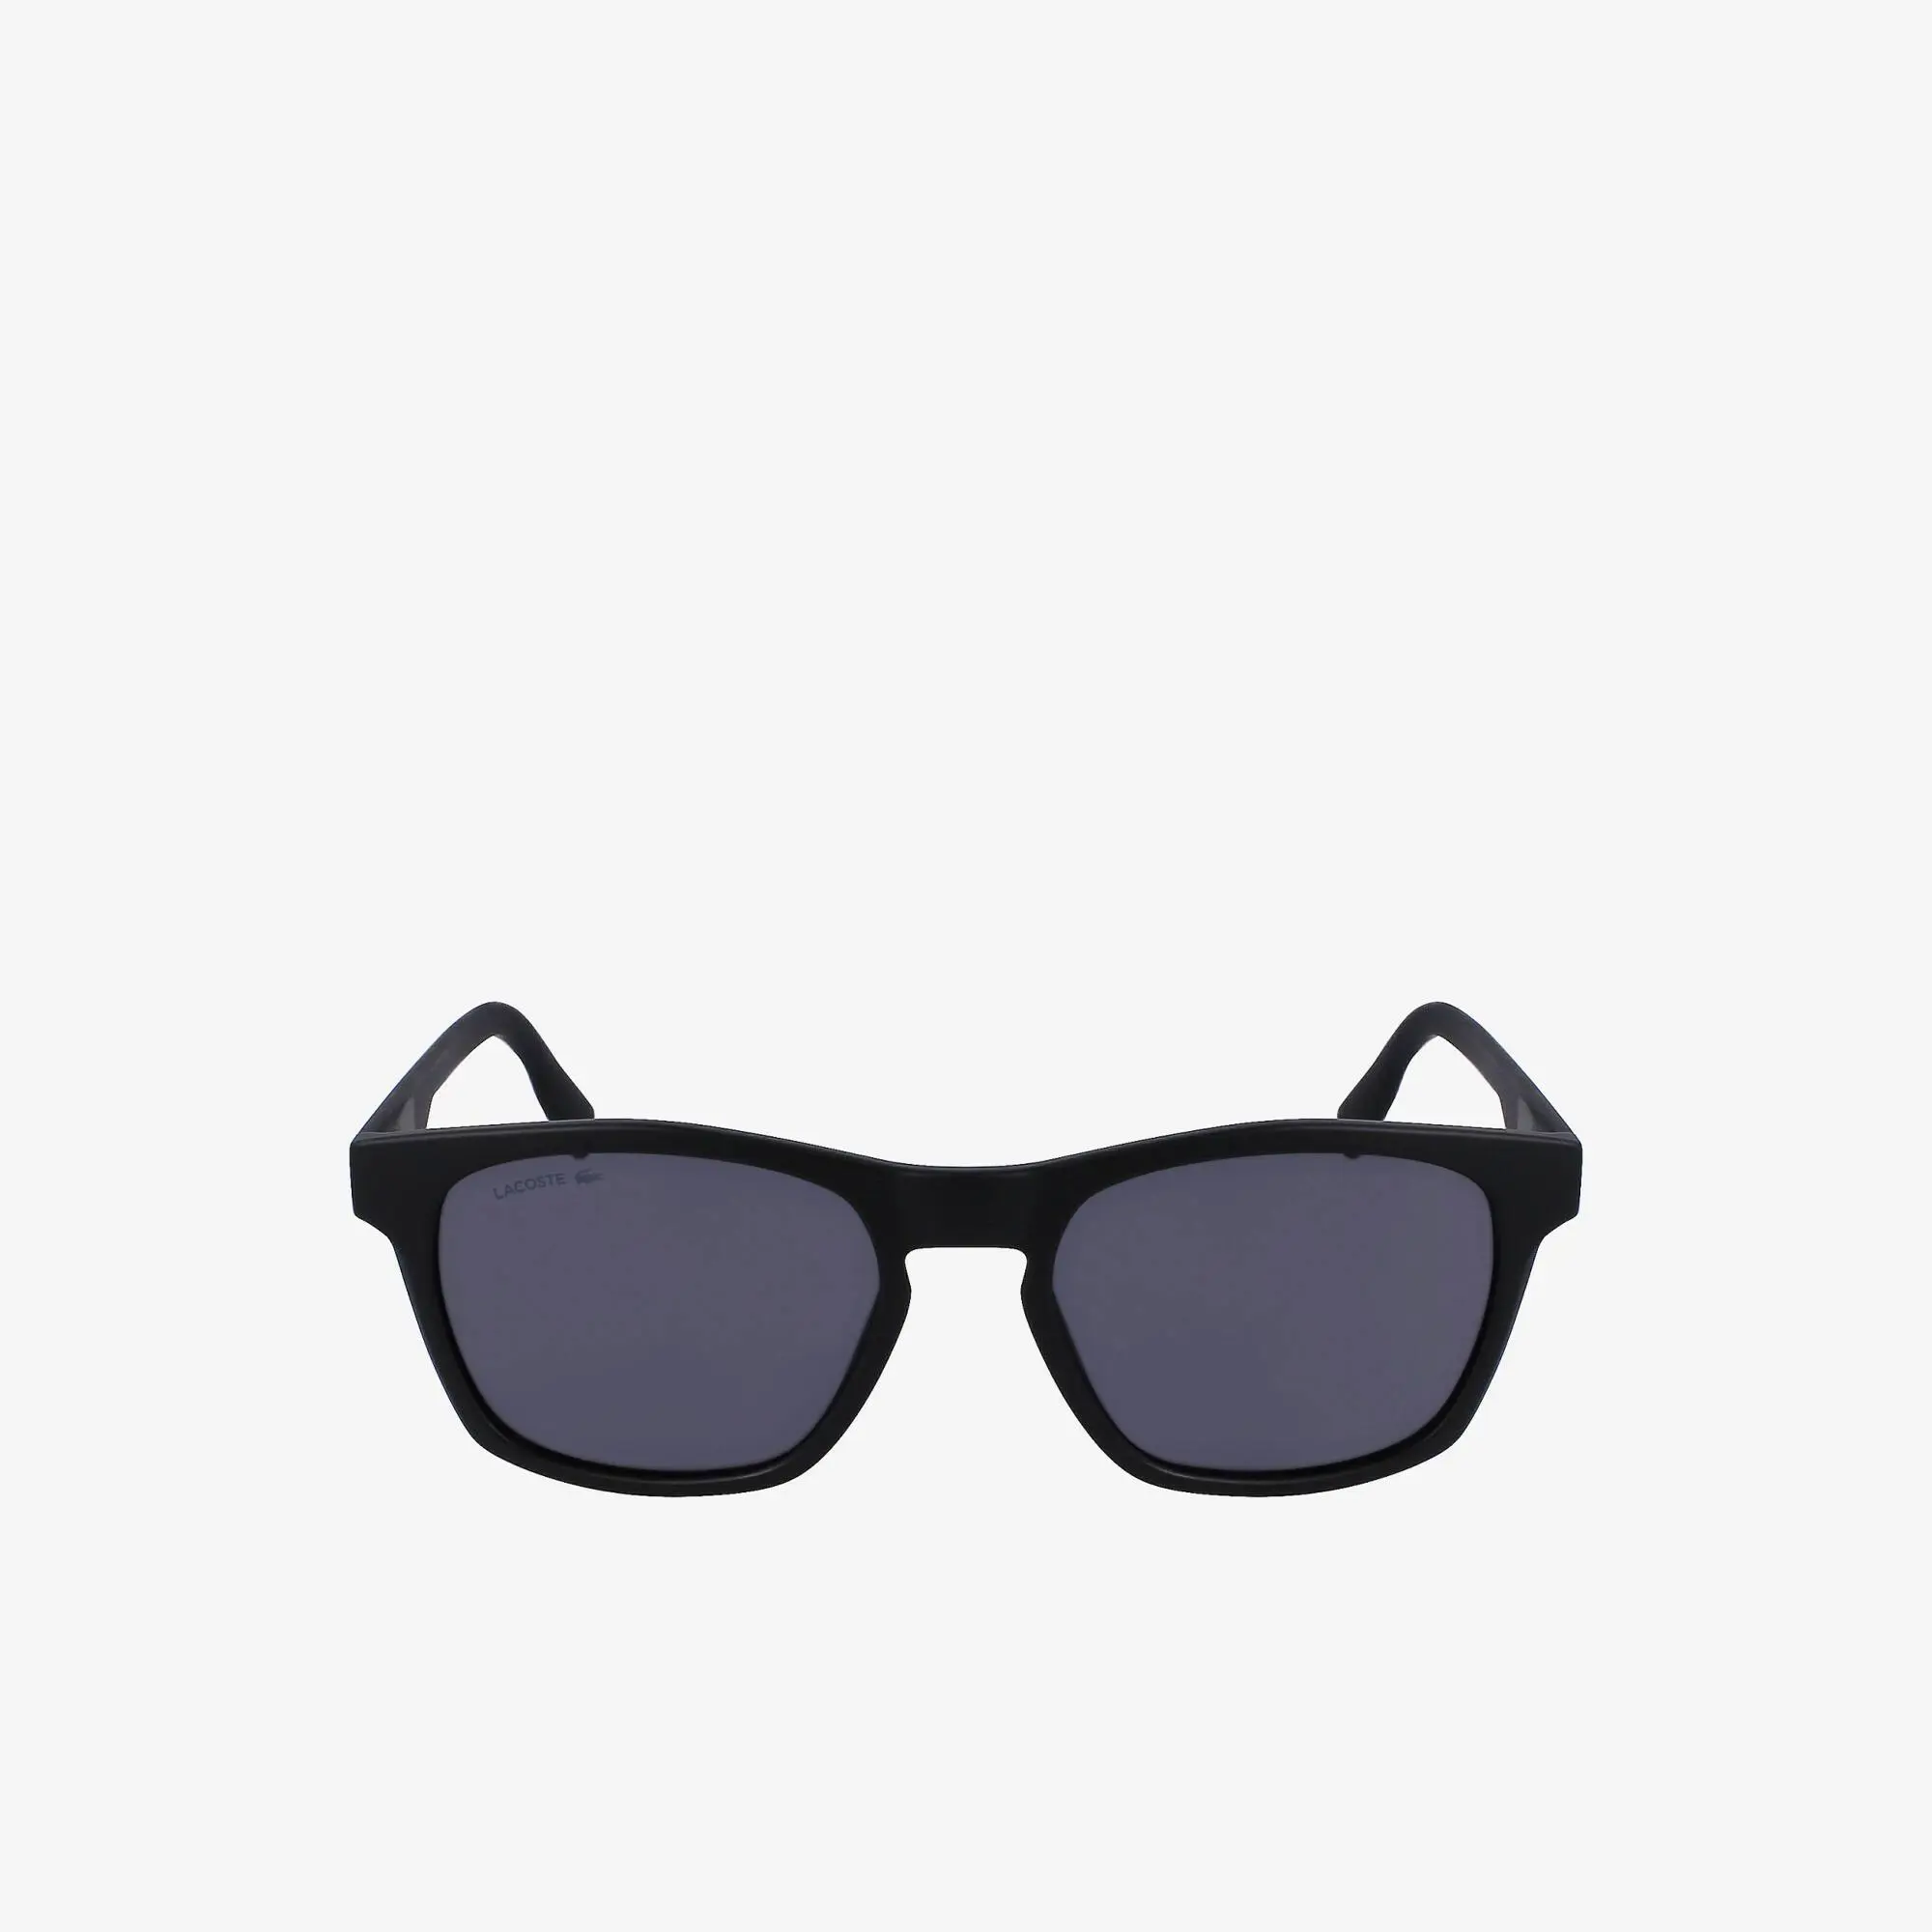 Lacoste Men’s Active Sunglasses. 1